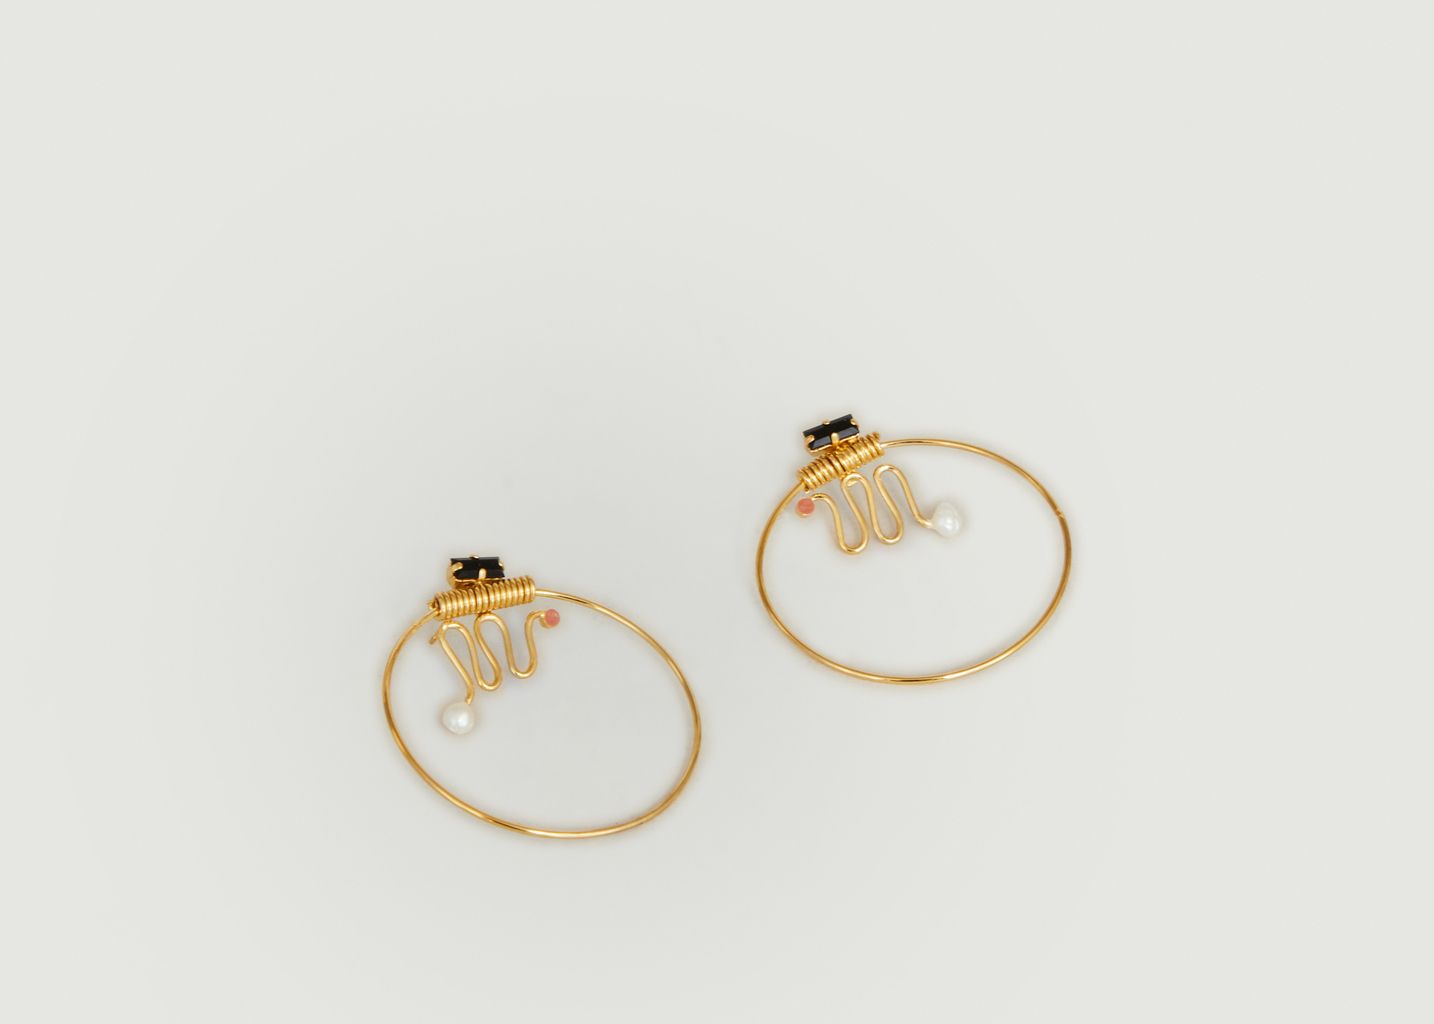 Ettore Totem brass hoop earrings gilded in 24K gold - Judith Benita